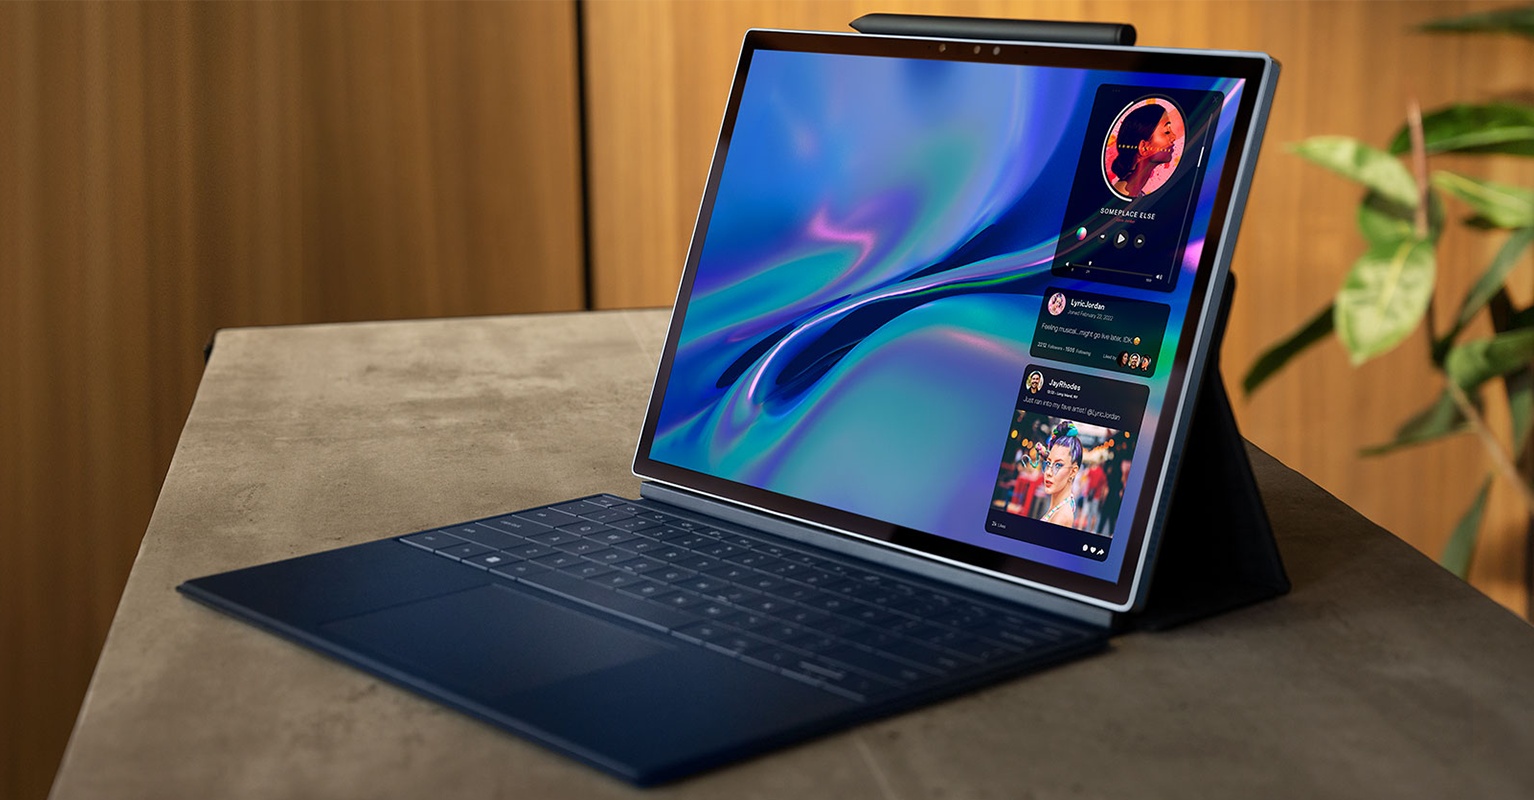 戴尔XPS 13二合一：强大的微软Surface Pro 8竞争对手的发布日期和价格得到确认 - Notebookcheck-cn.com News